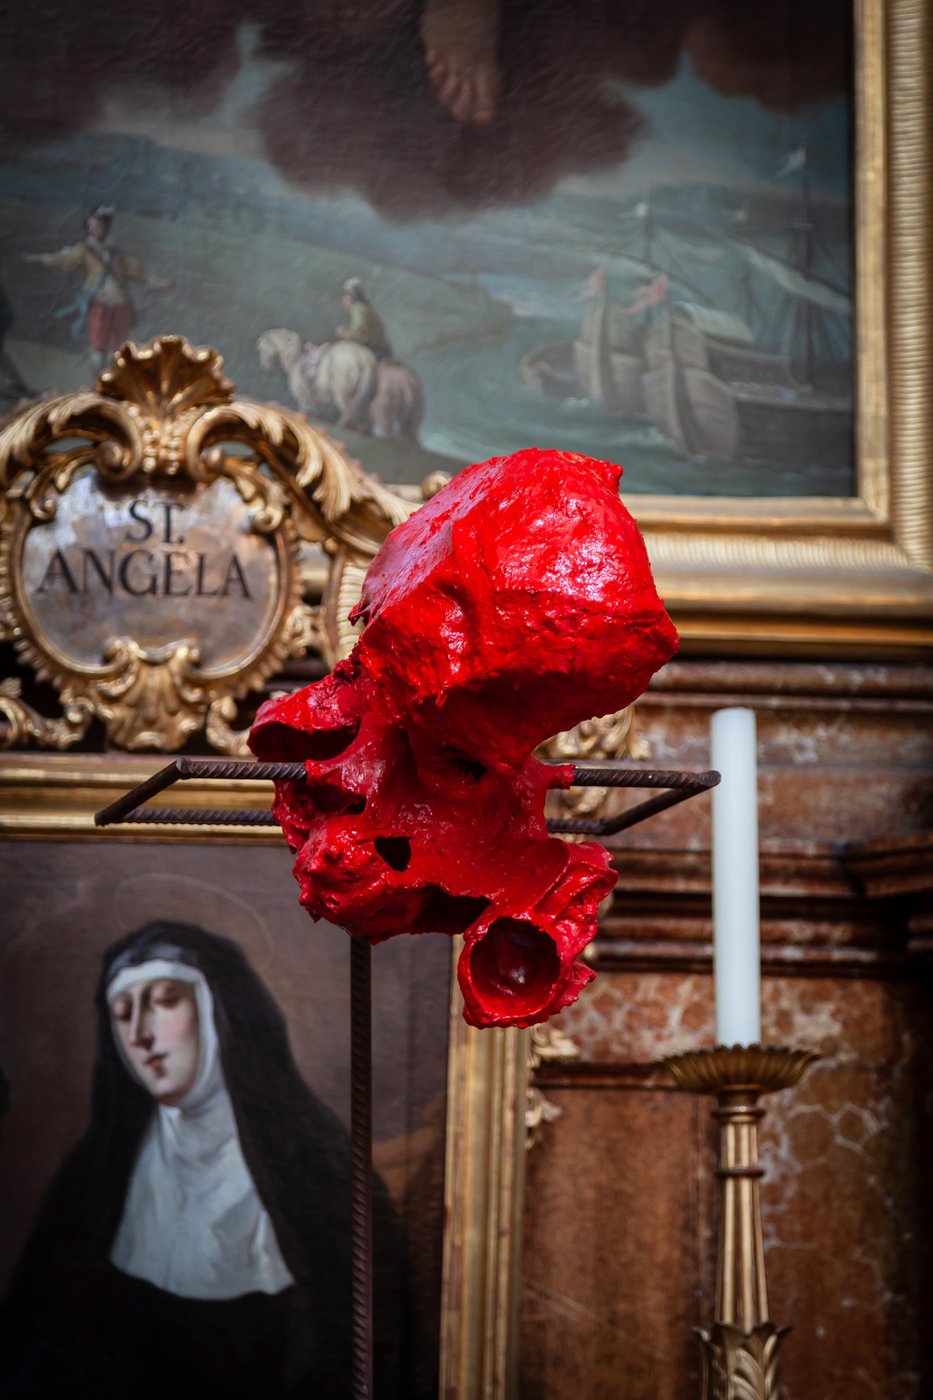 vor einem Altarbild in einer Kirche steht eine rote Kunstinstallation